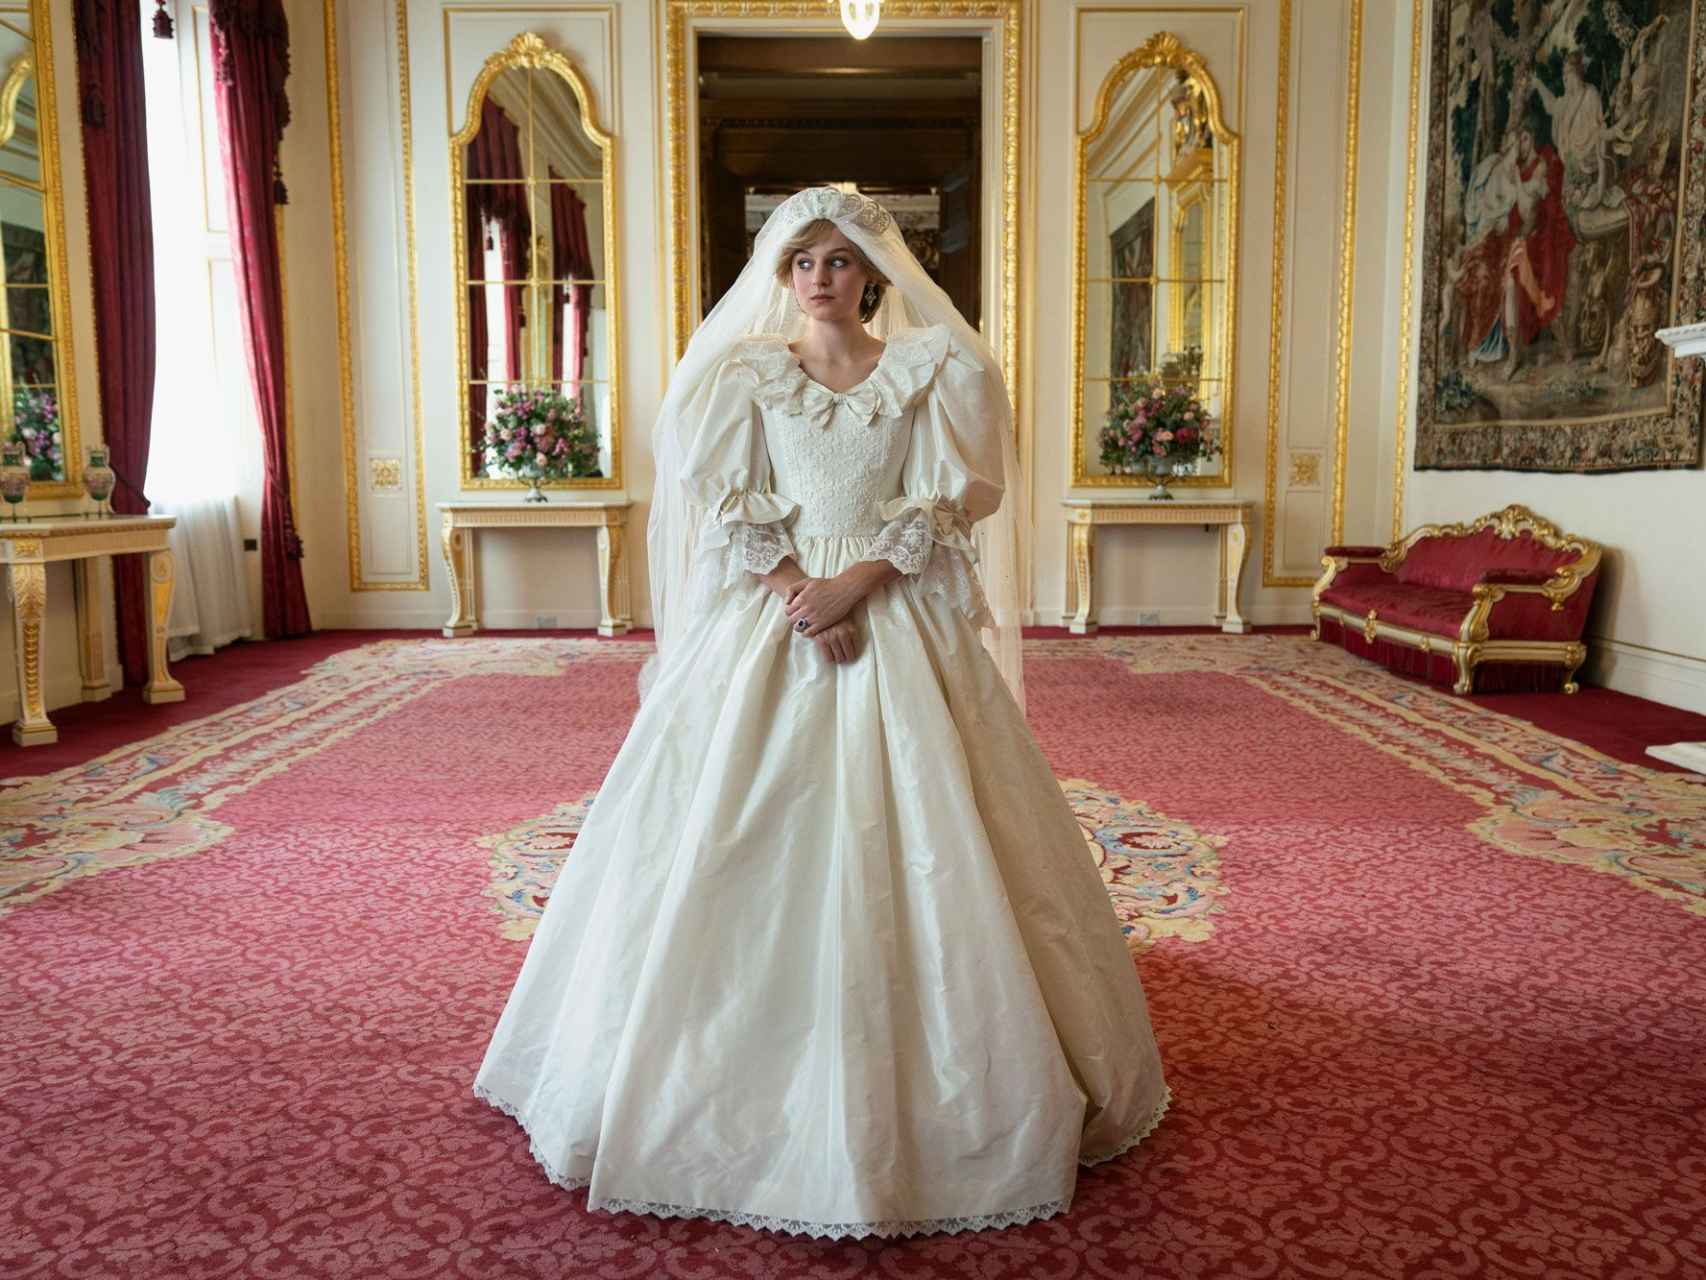 La actriz Emma Corrin caracterizada de Diana de Gales en su boda en 'The Crown'.